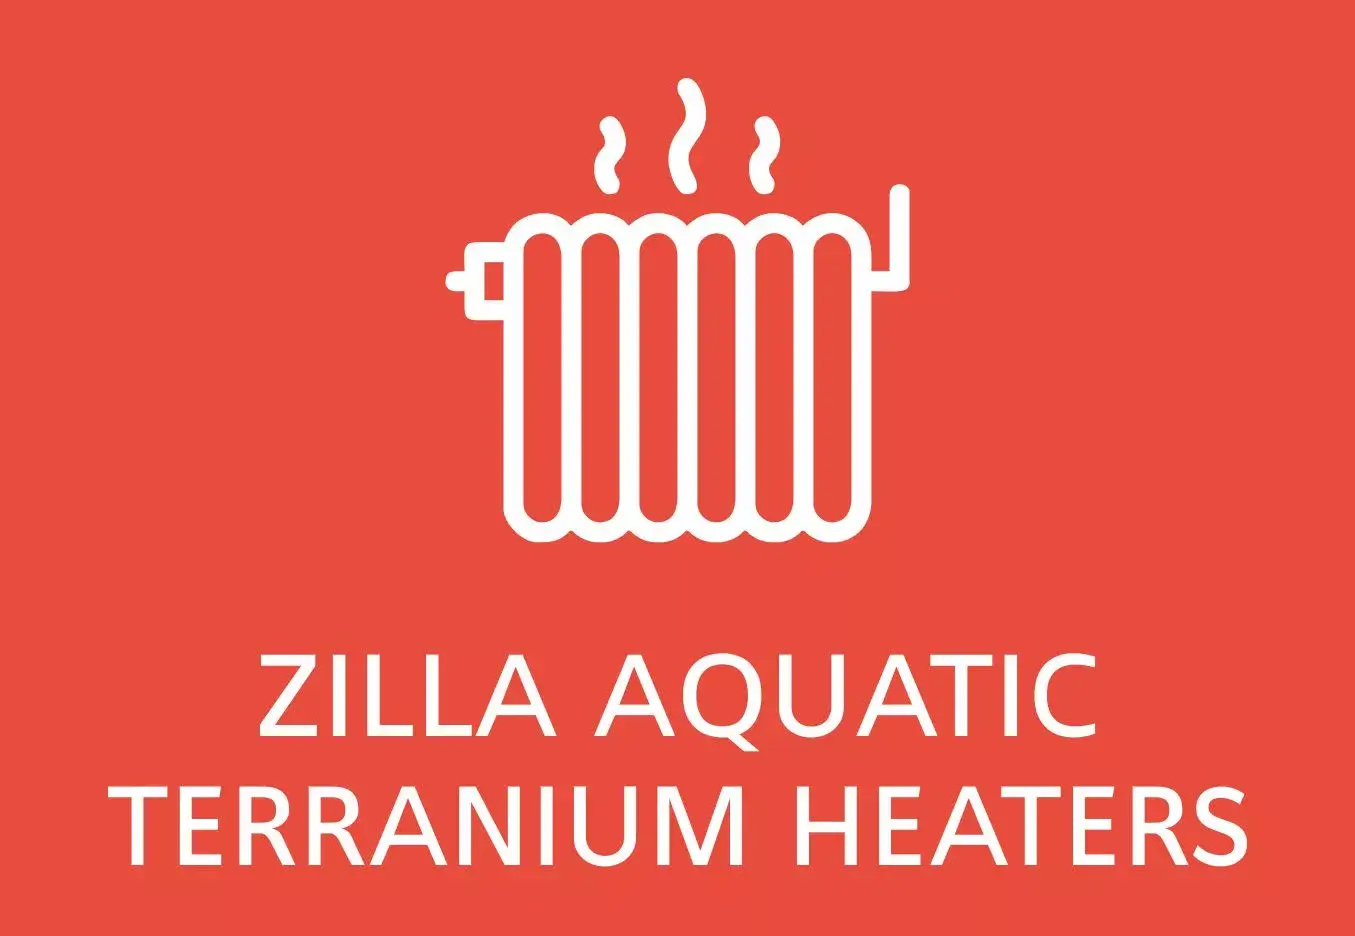 Zilla Aquatic terranium heaters